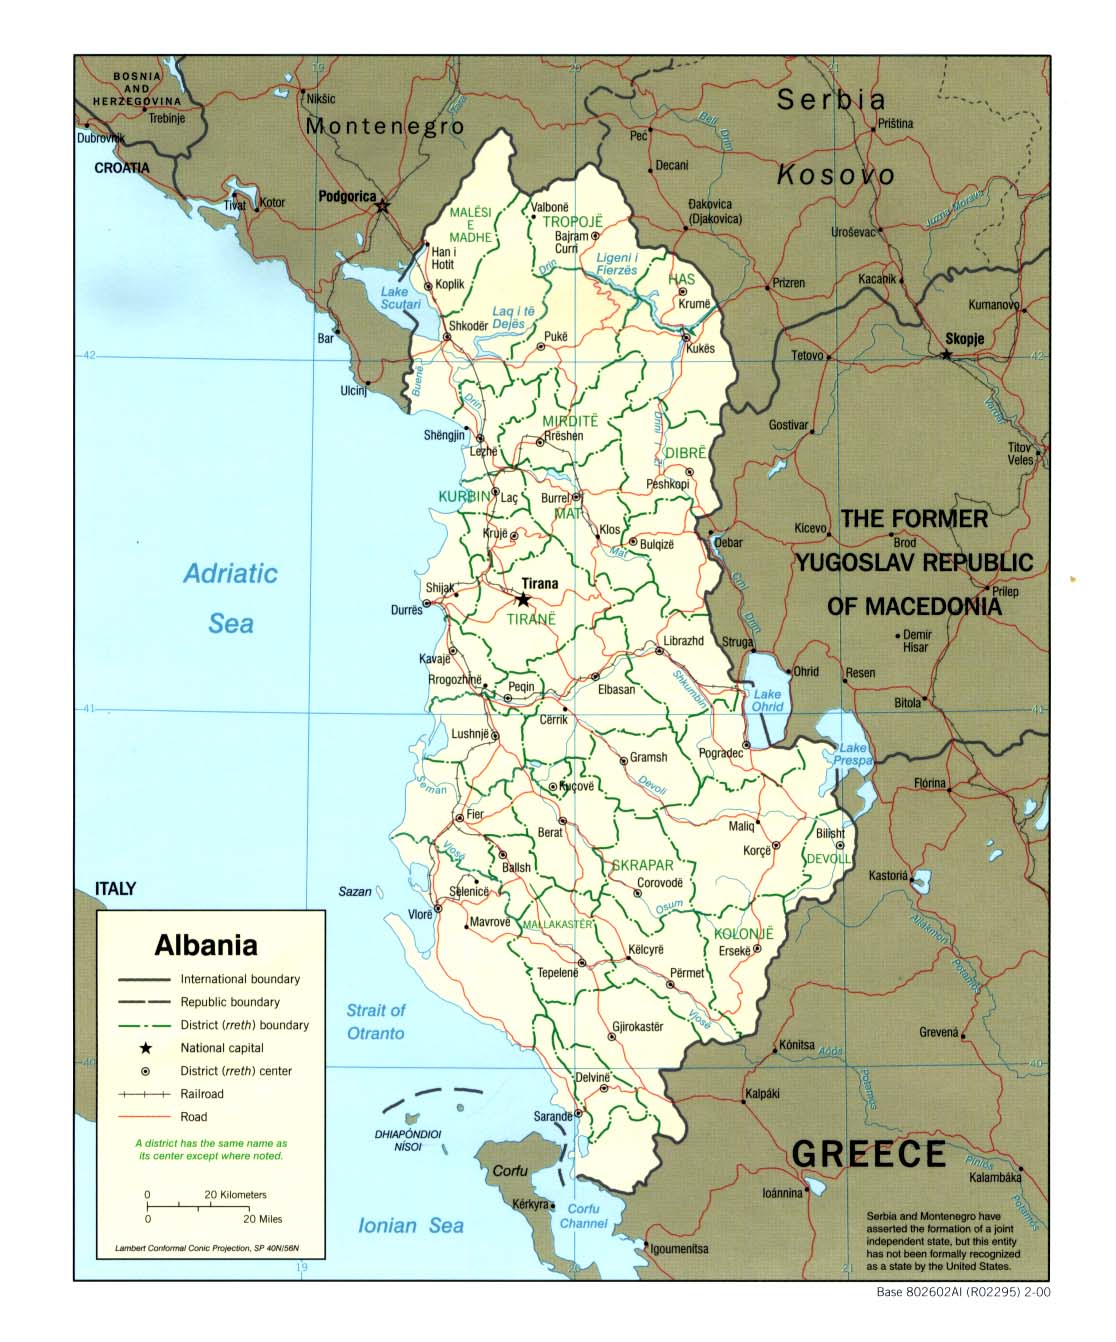 https://legacy.lib.utexas.edu/maps/europe/albania_pol00.jpg